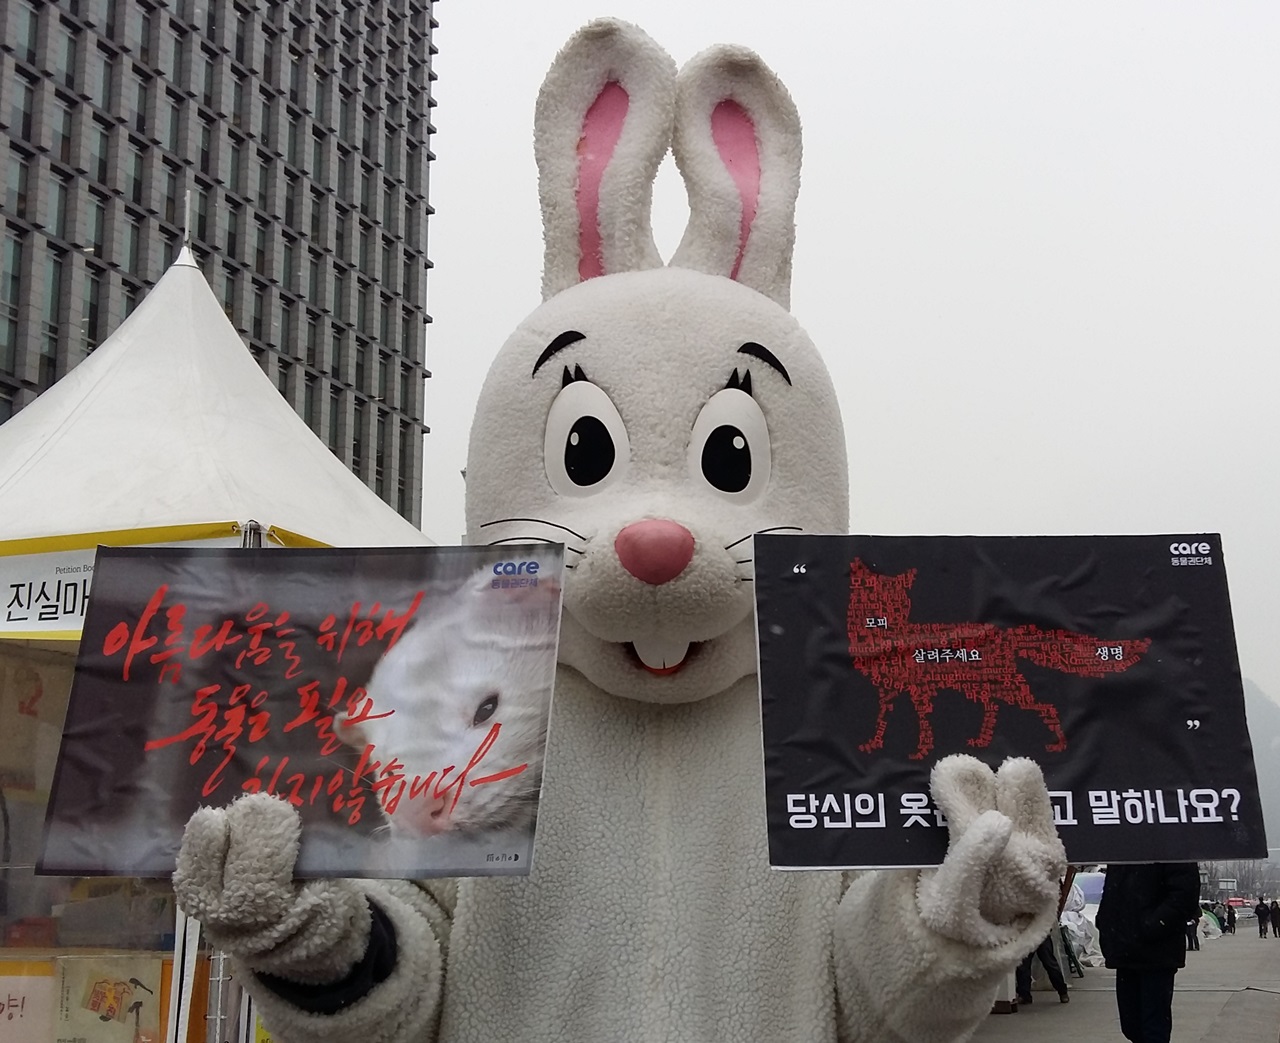 14일, 광화문에서 동물보호단체 활동가가 모피반대 피켓을 들고 있다.